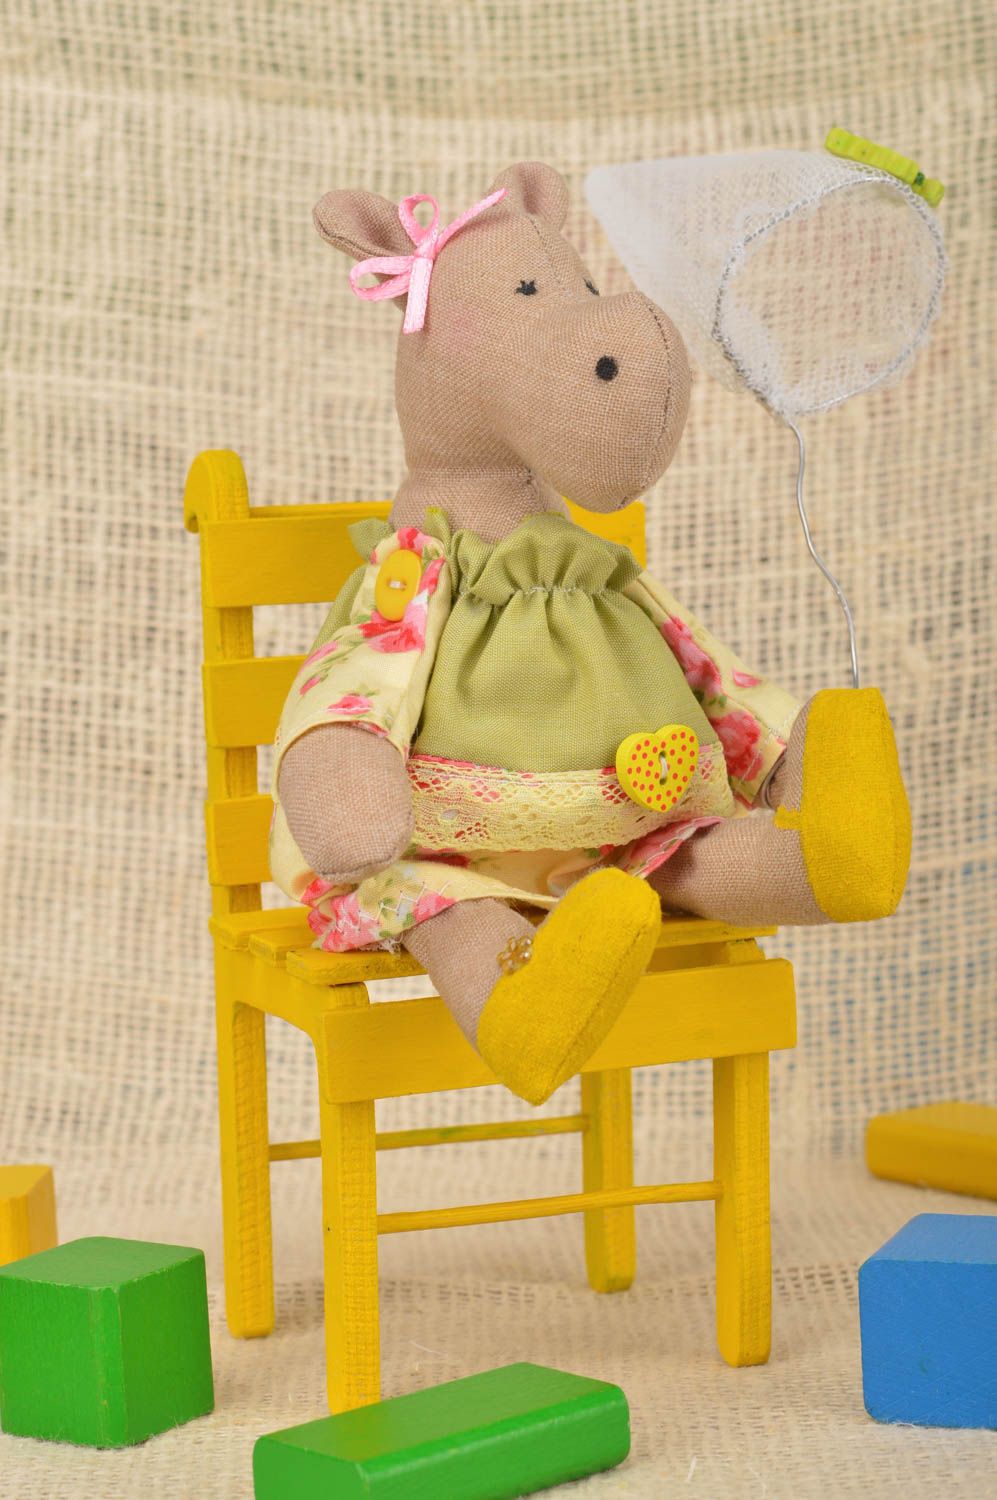 Мягкая игрушка ручной работы из хлопка для декора дома Бегемотик на желтом стуле фото 1